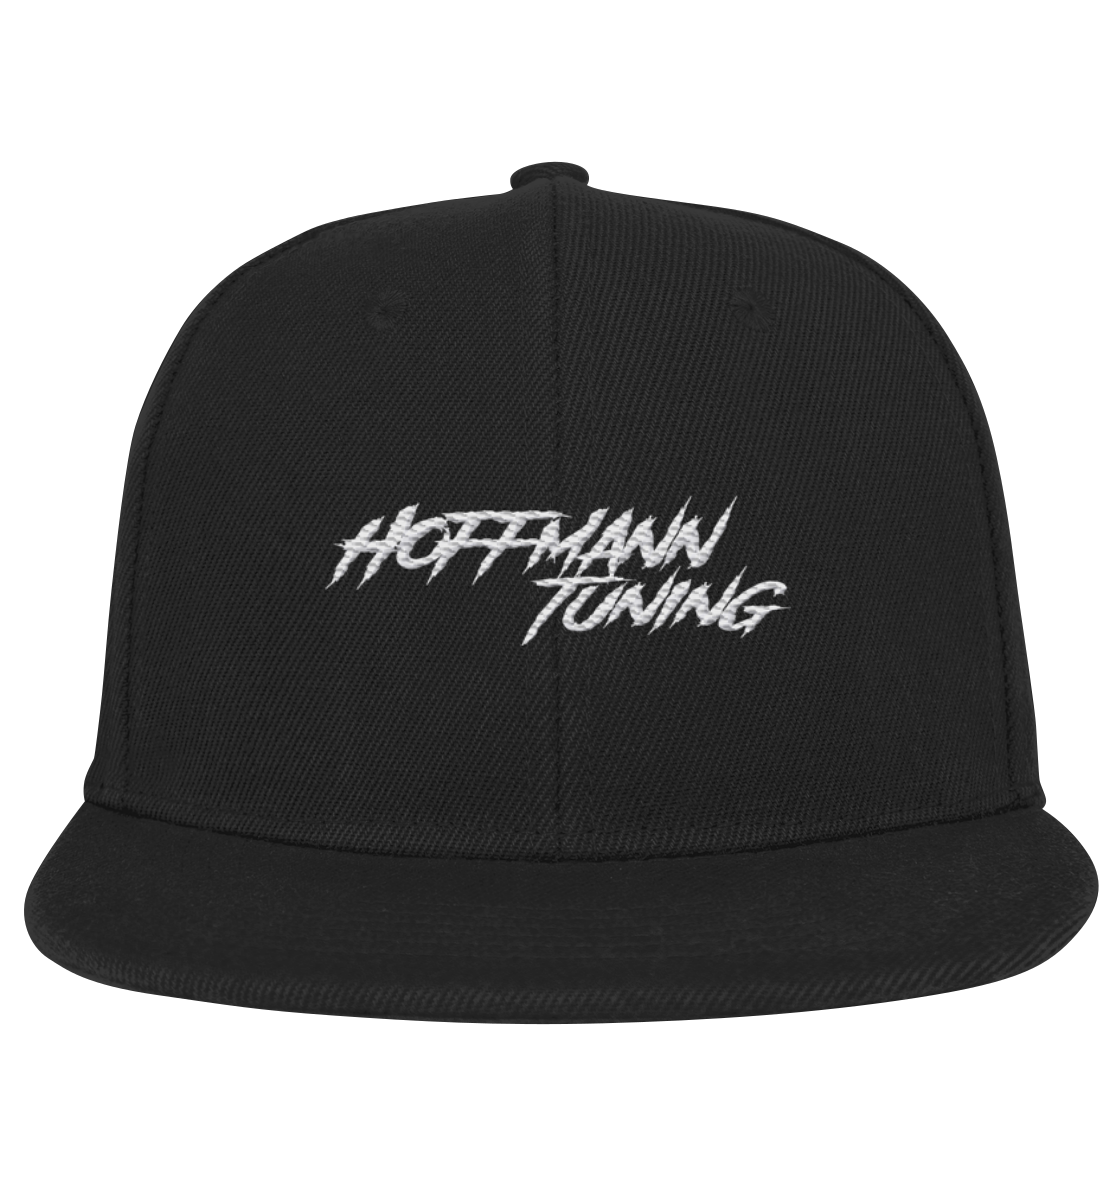 Hoffmann Tuning Edition - Kinder Snapback Mütze Jungen/ Mädchen schwarz Logo Stick